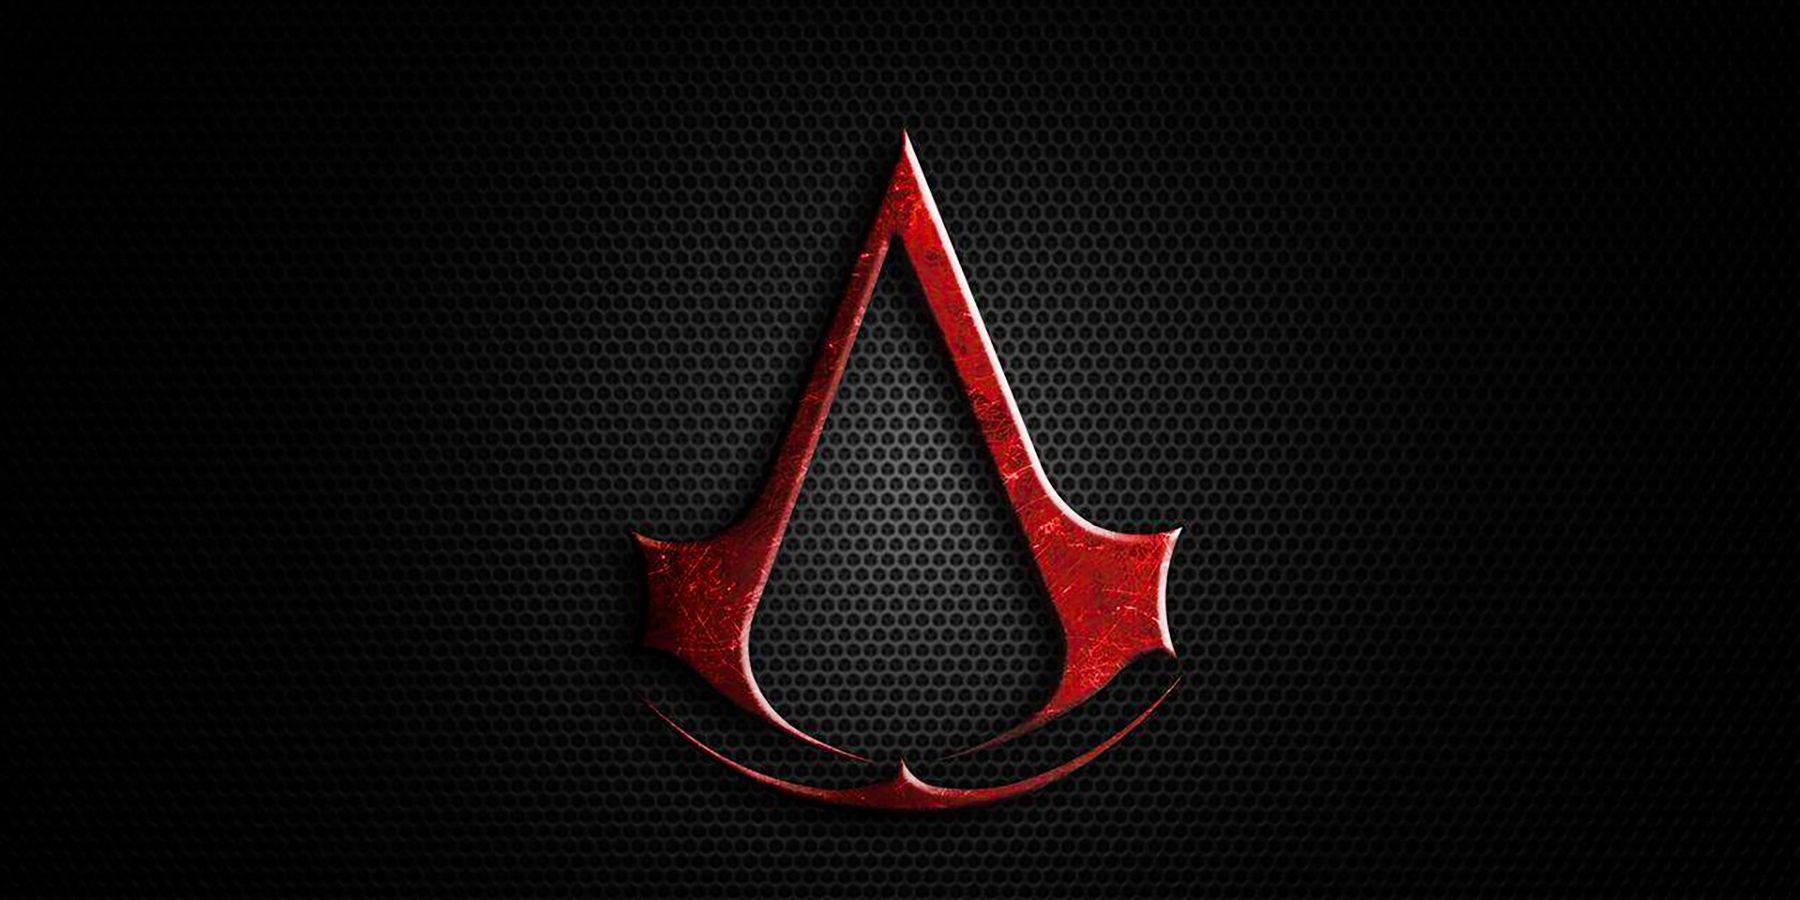 새로운 Assassin ‘s Creed 게임 설정이 잠재적으로 유출되었습니다